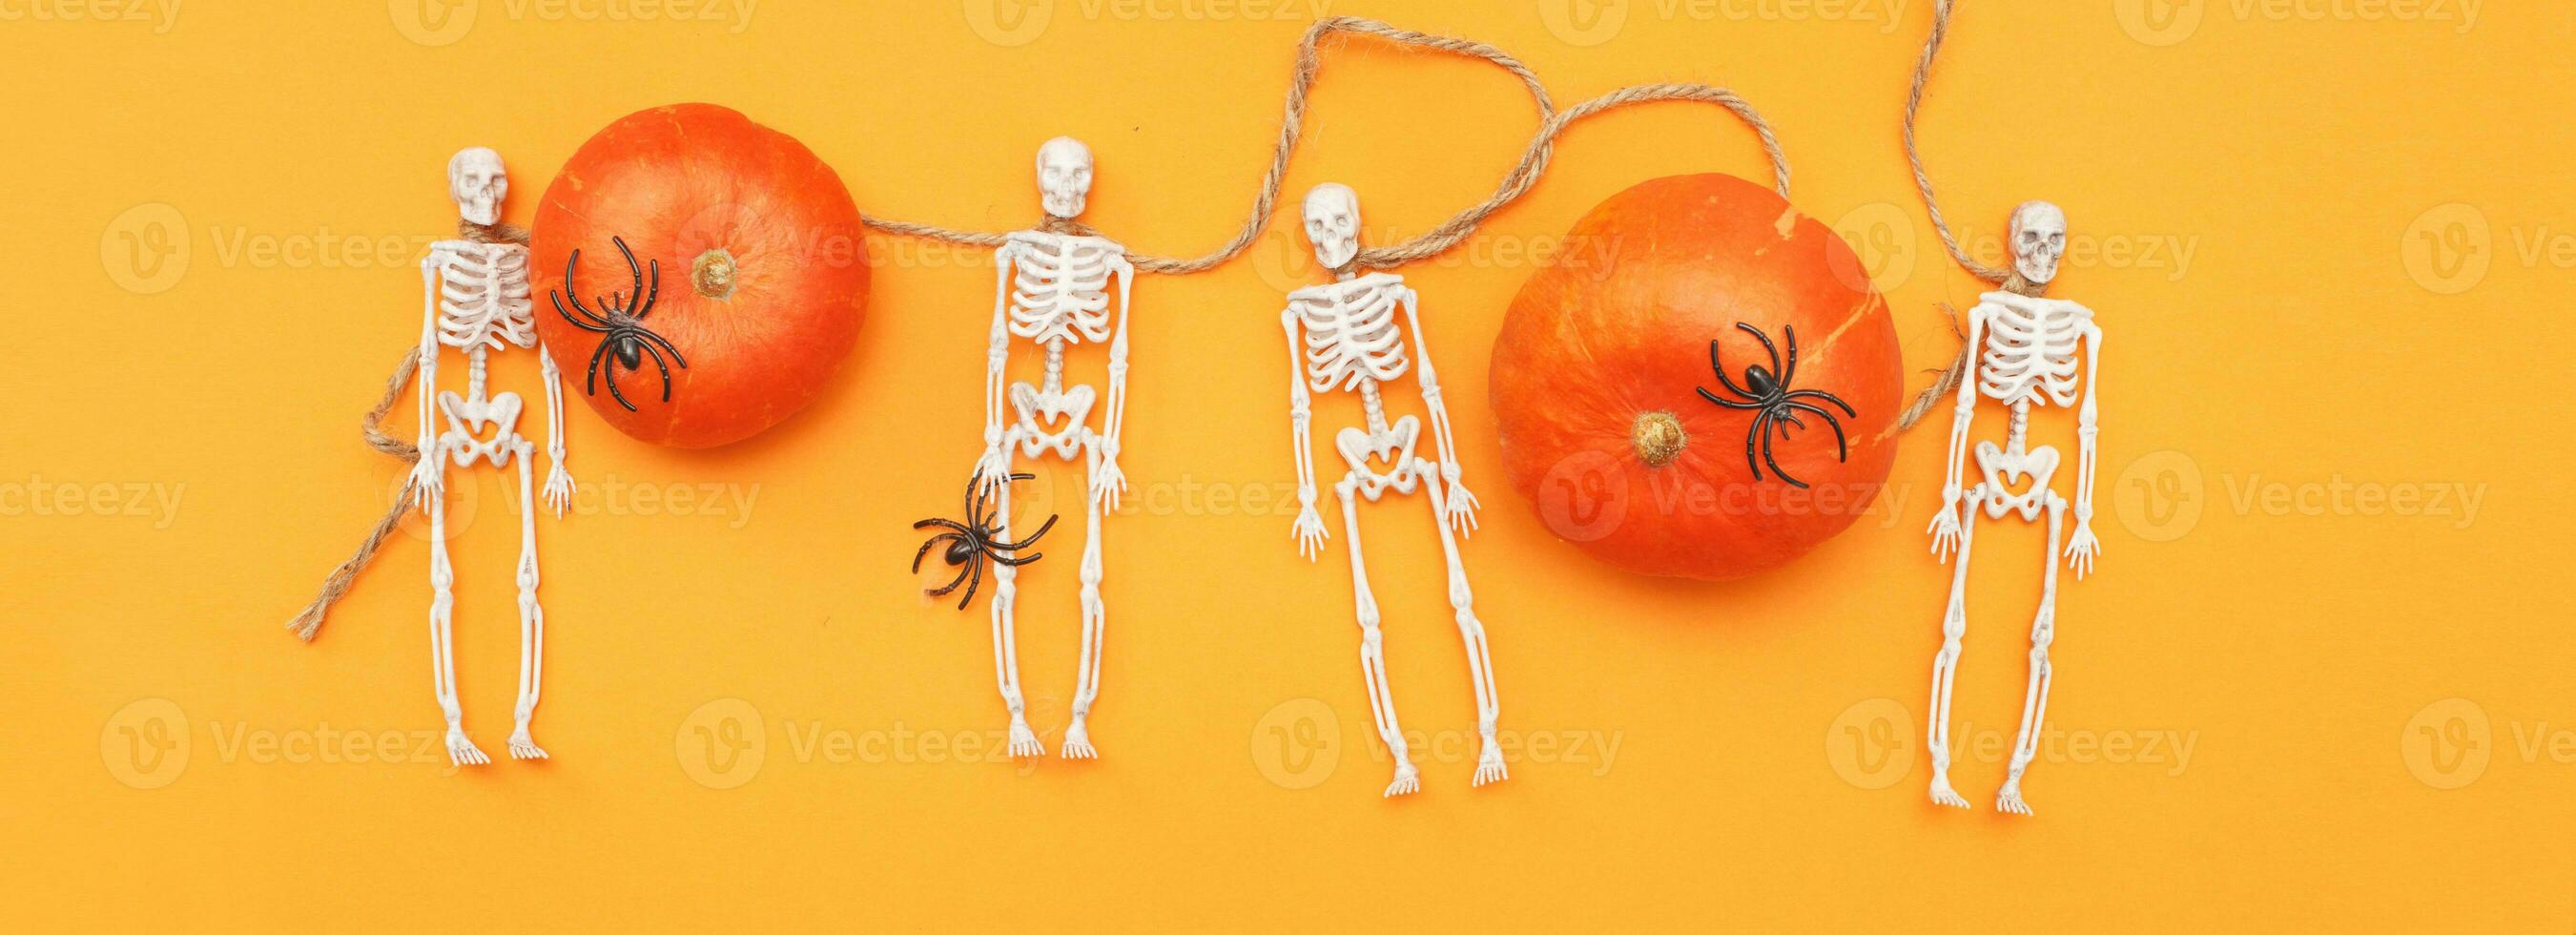 halloween pumpa med skelett och svart spindlar på orange bakgrund. baner foto